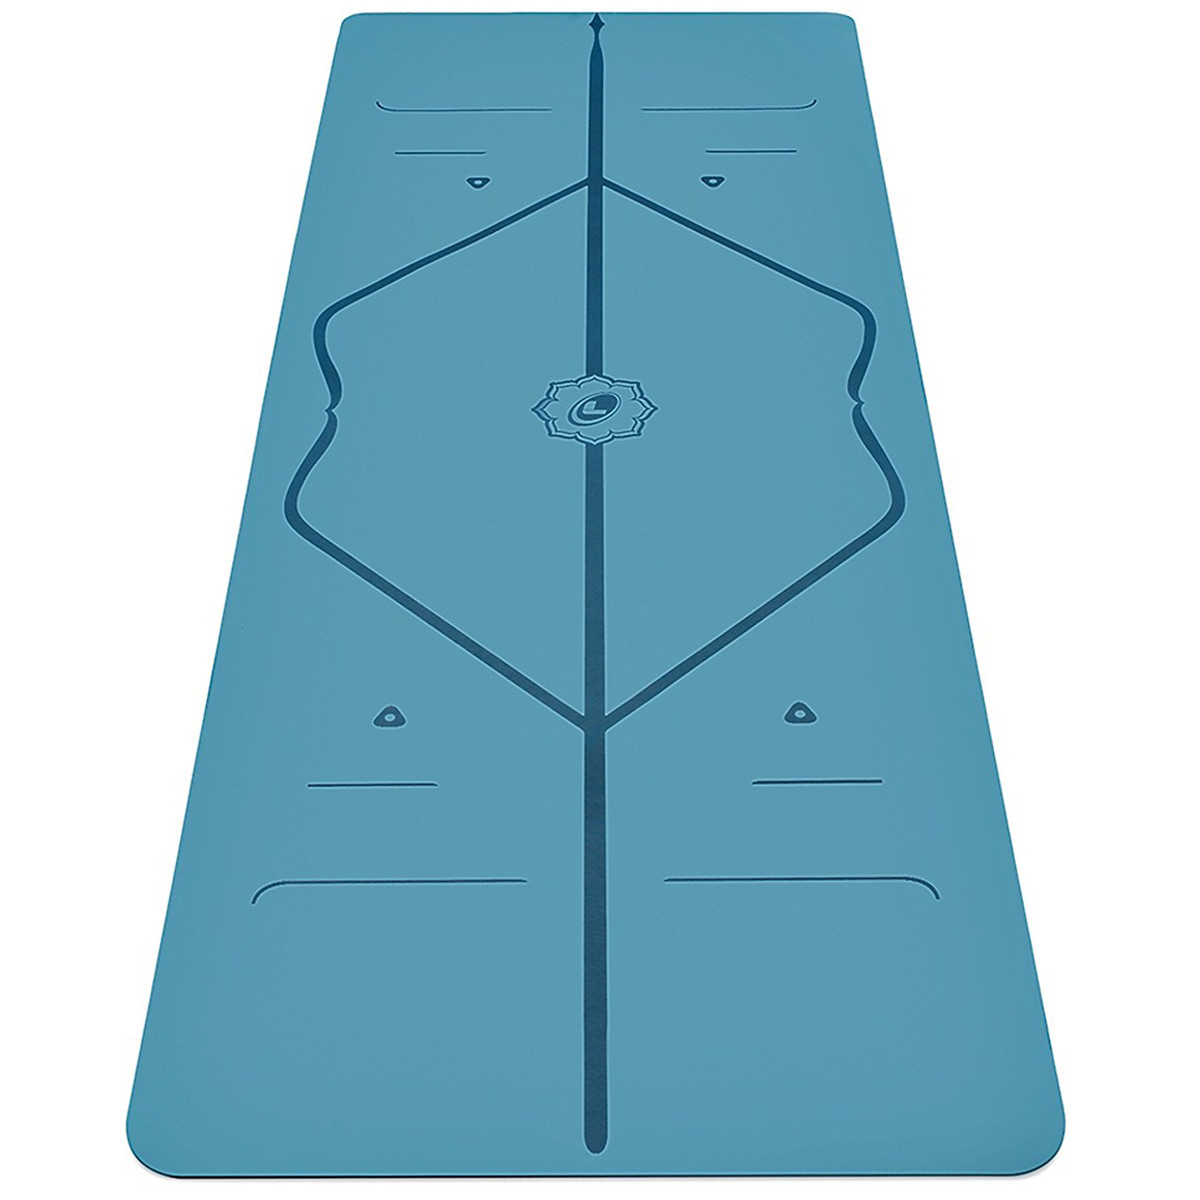 Thảm Yoga Định Tuyến 2 Lớp 6mm miDoctor + Bao Đựng Thảm Yoga Định Tuyến + Dây Buộc (Màu Ngẫu Nhiên)